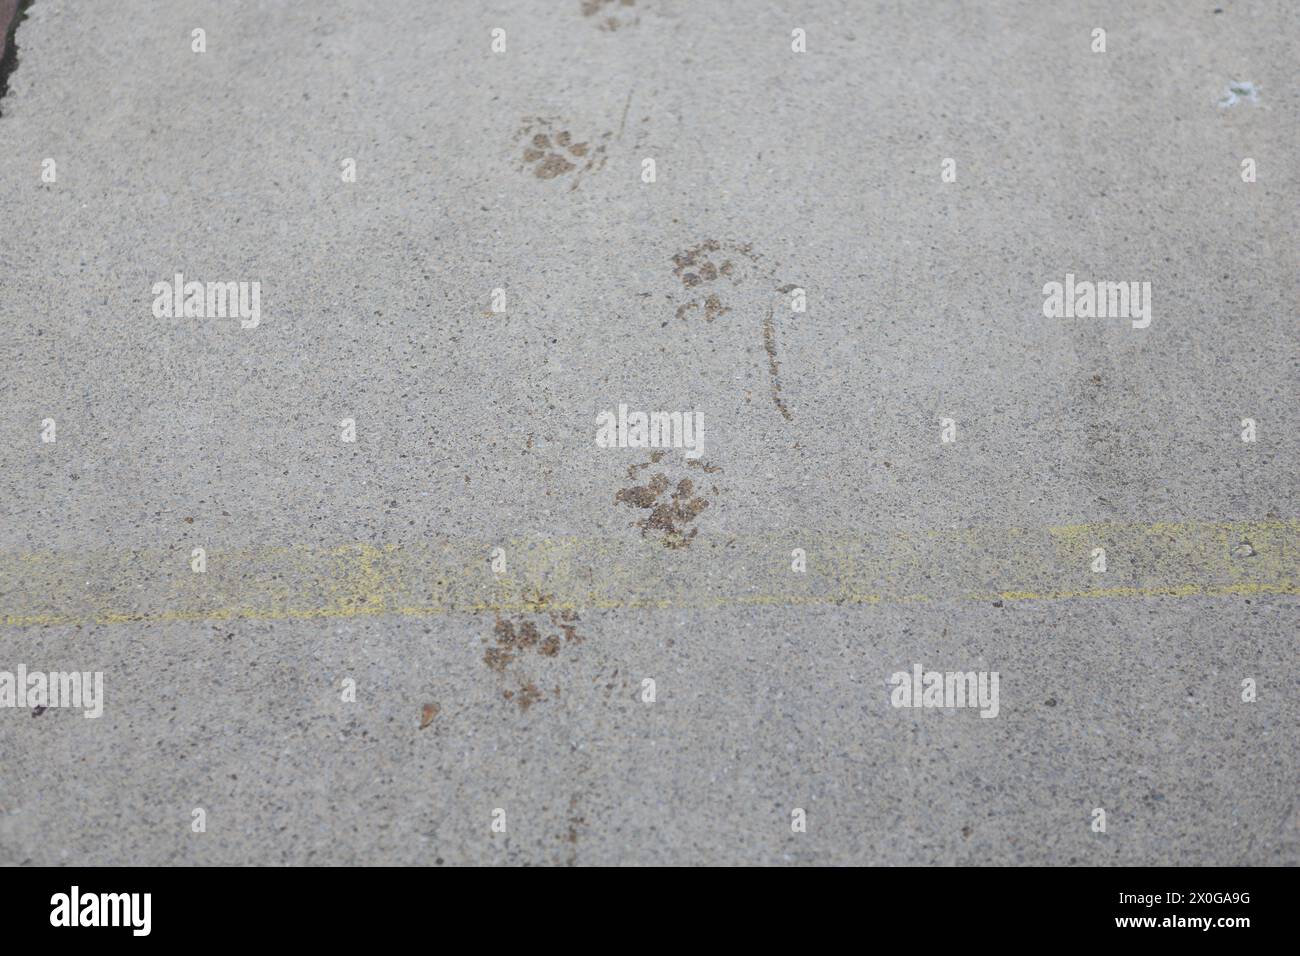 Hundepfaden auf der konkreten Oberfläche Konzept des Weges, Finden des Weges Richtung Navigation Walkies, Walking Hundeschlittengehen Stockfoto